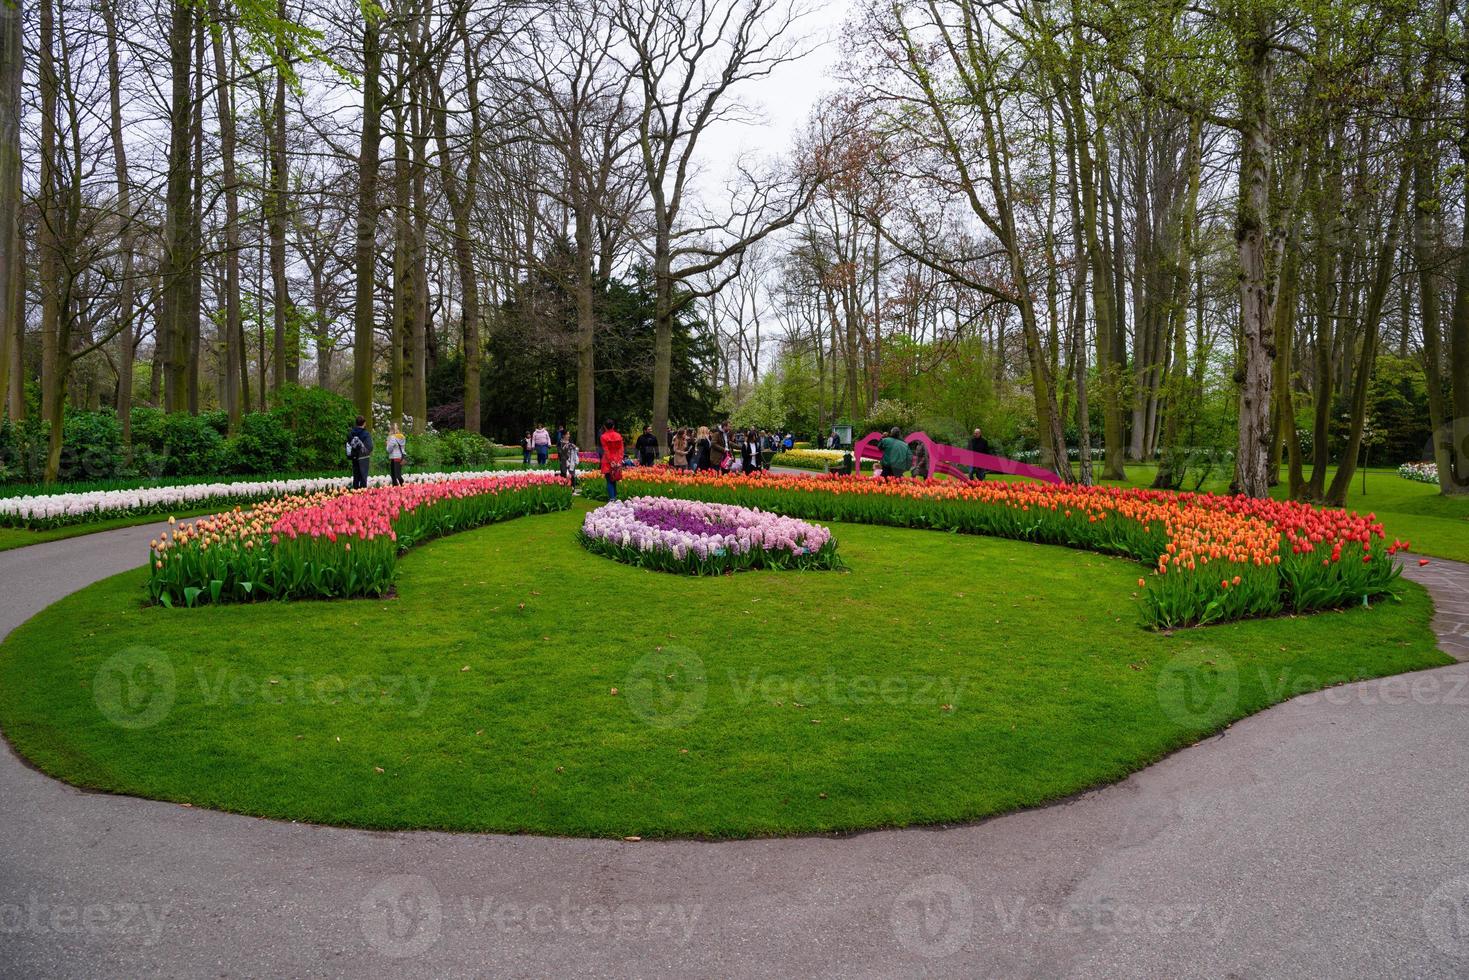 Tulipes en fleurs dans le parc de Keukenhof, lisse, Hollande, Pays-Bas photo